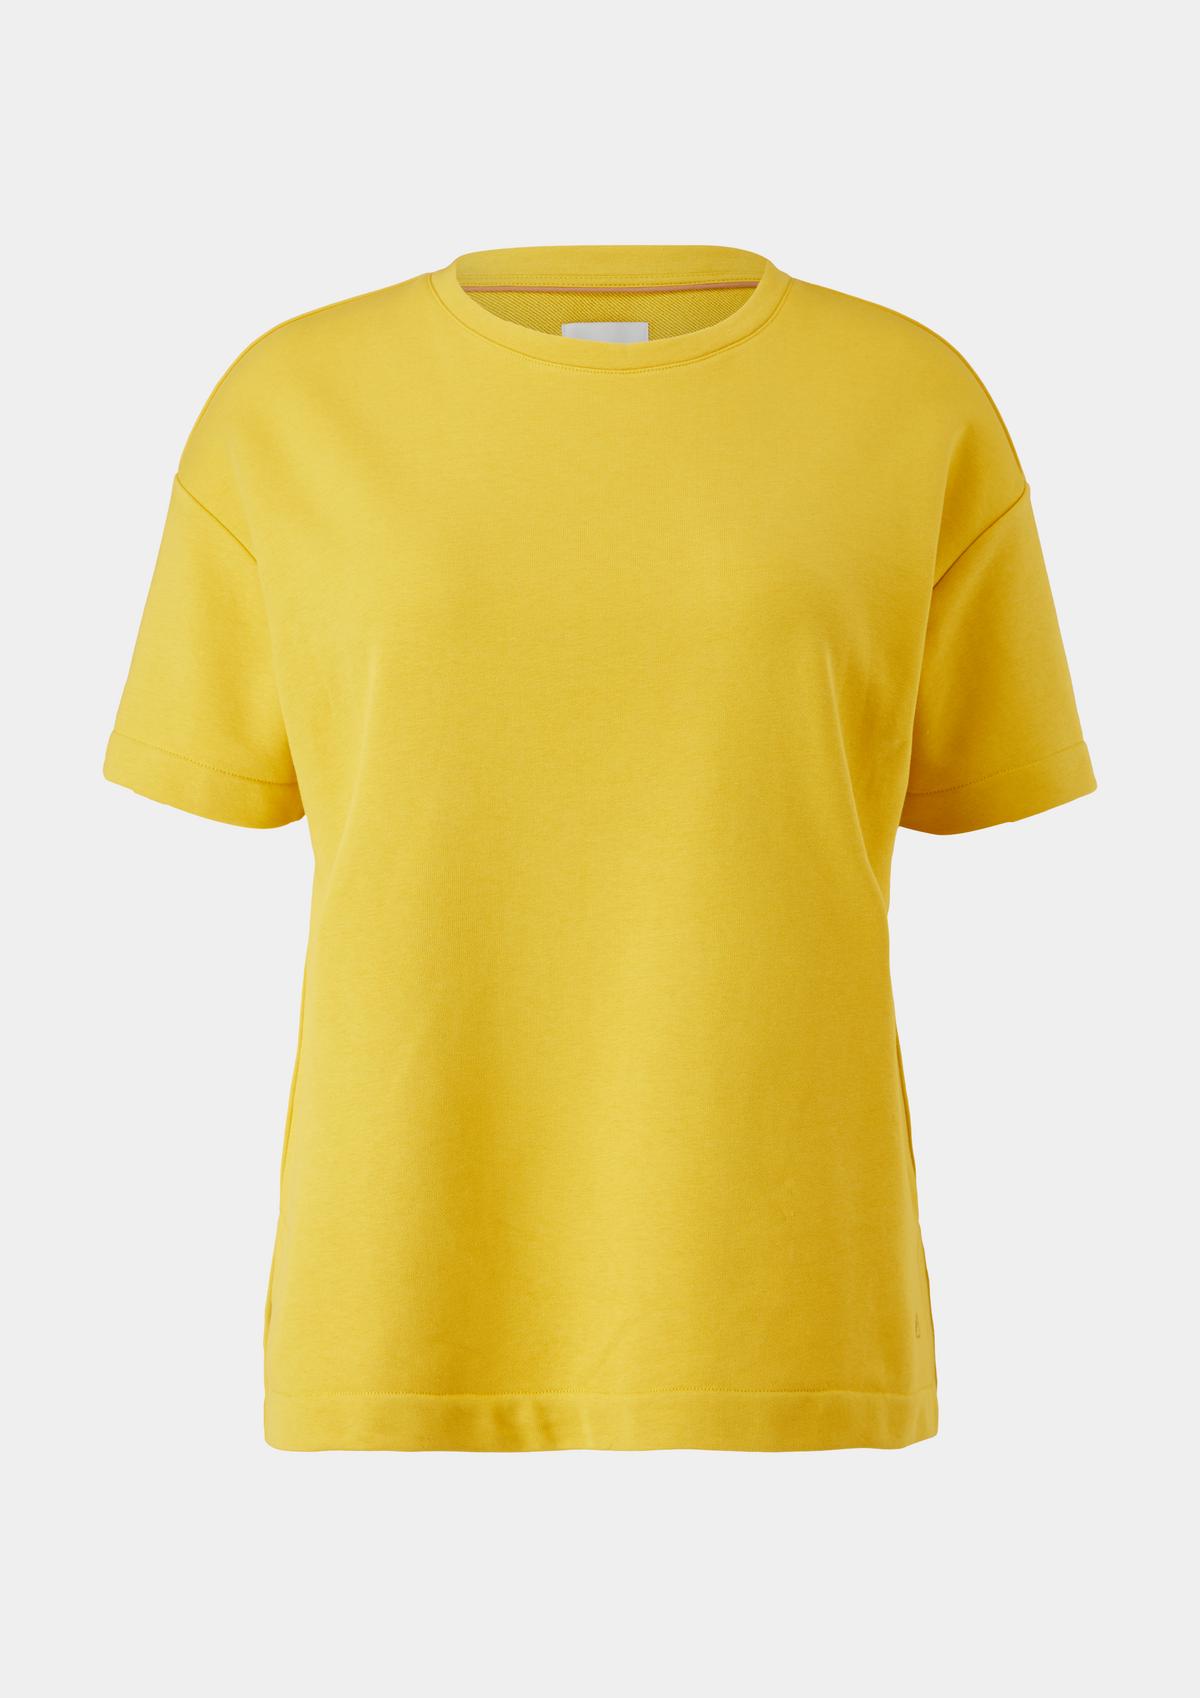 Sweatshirt mit kurzen Ärmeln - gelb